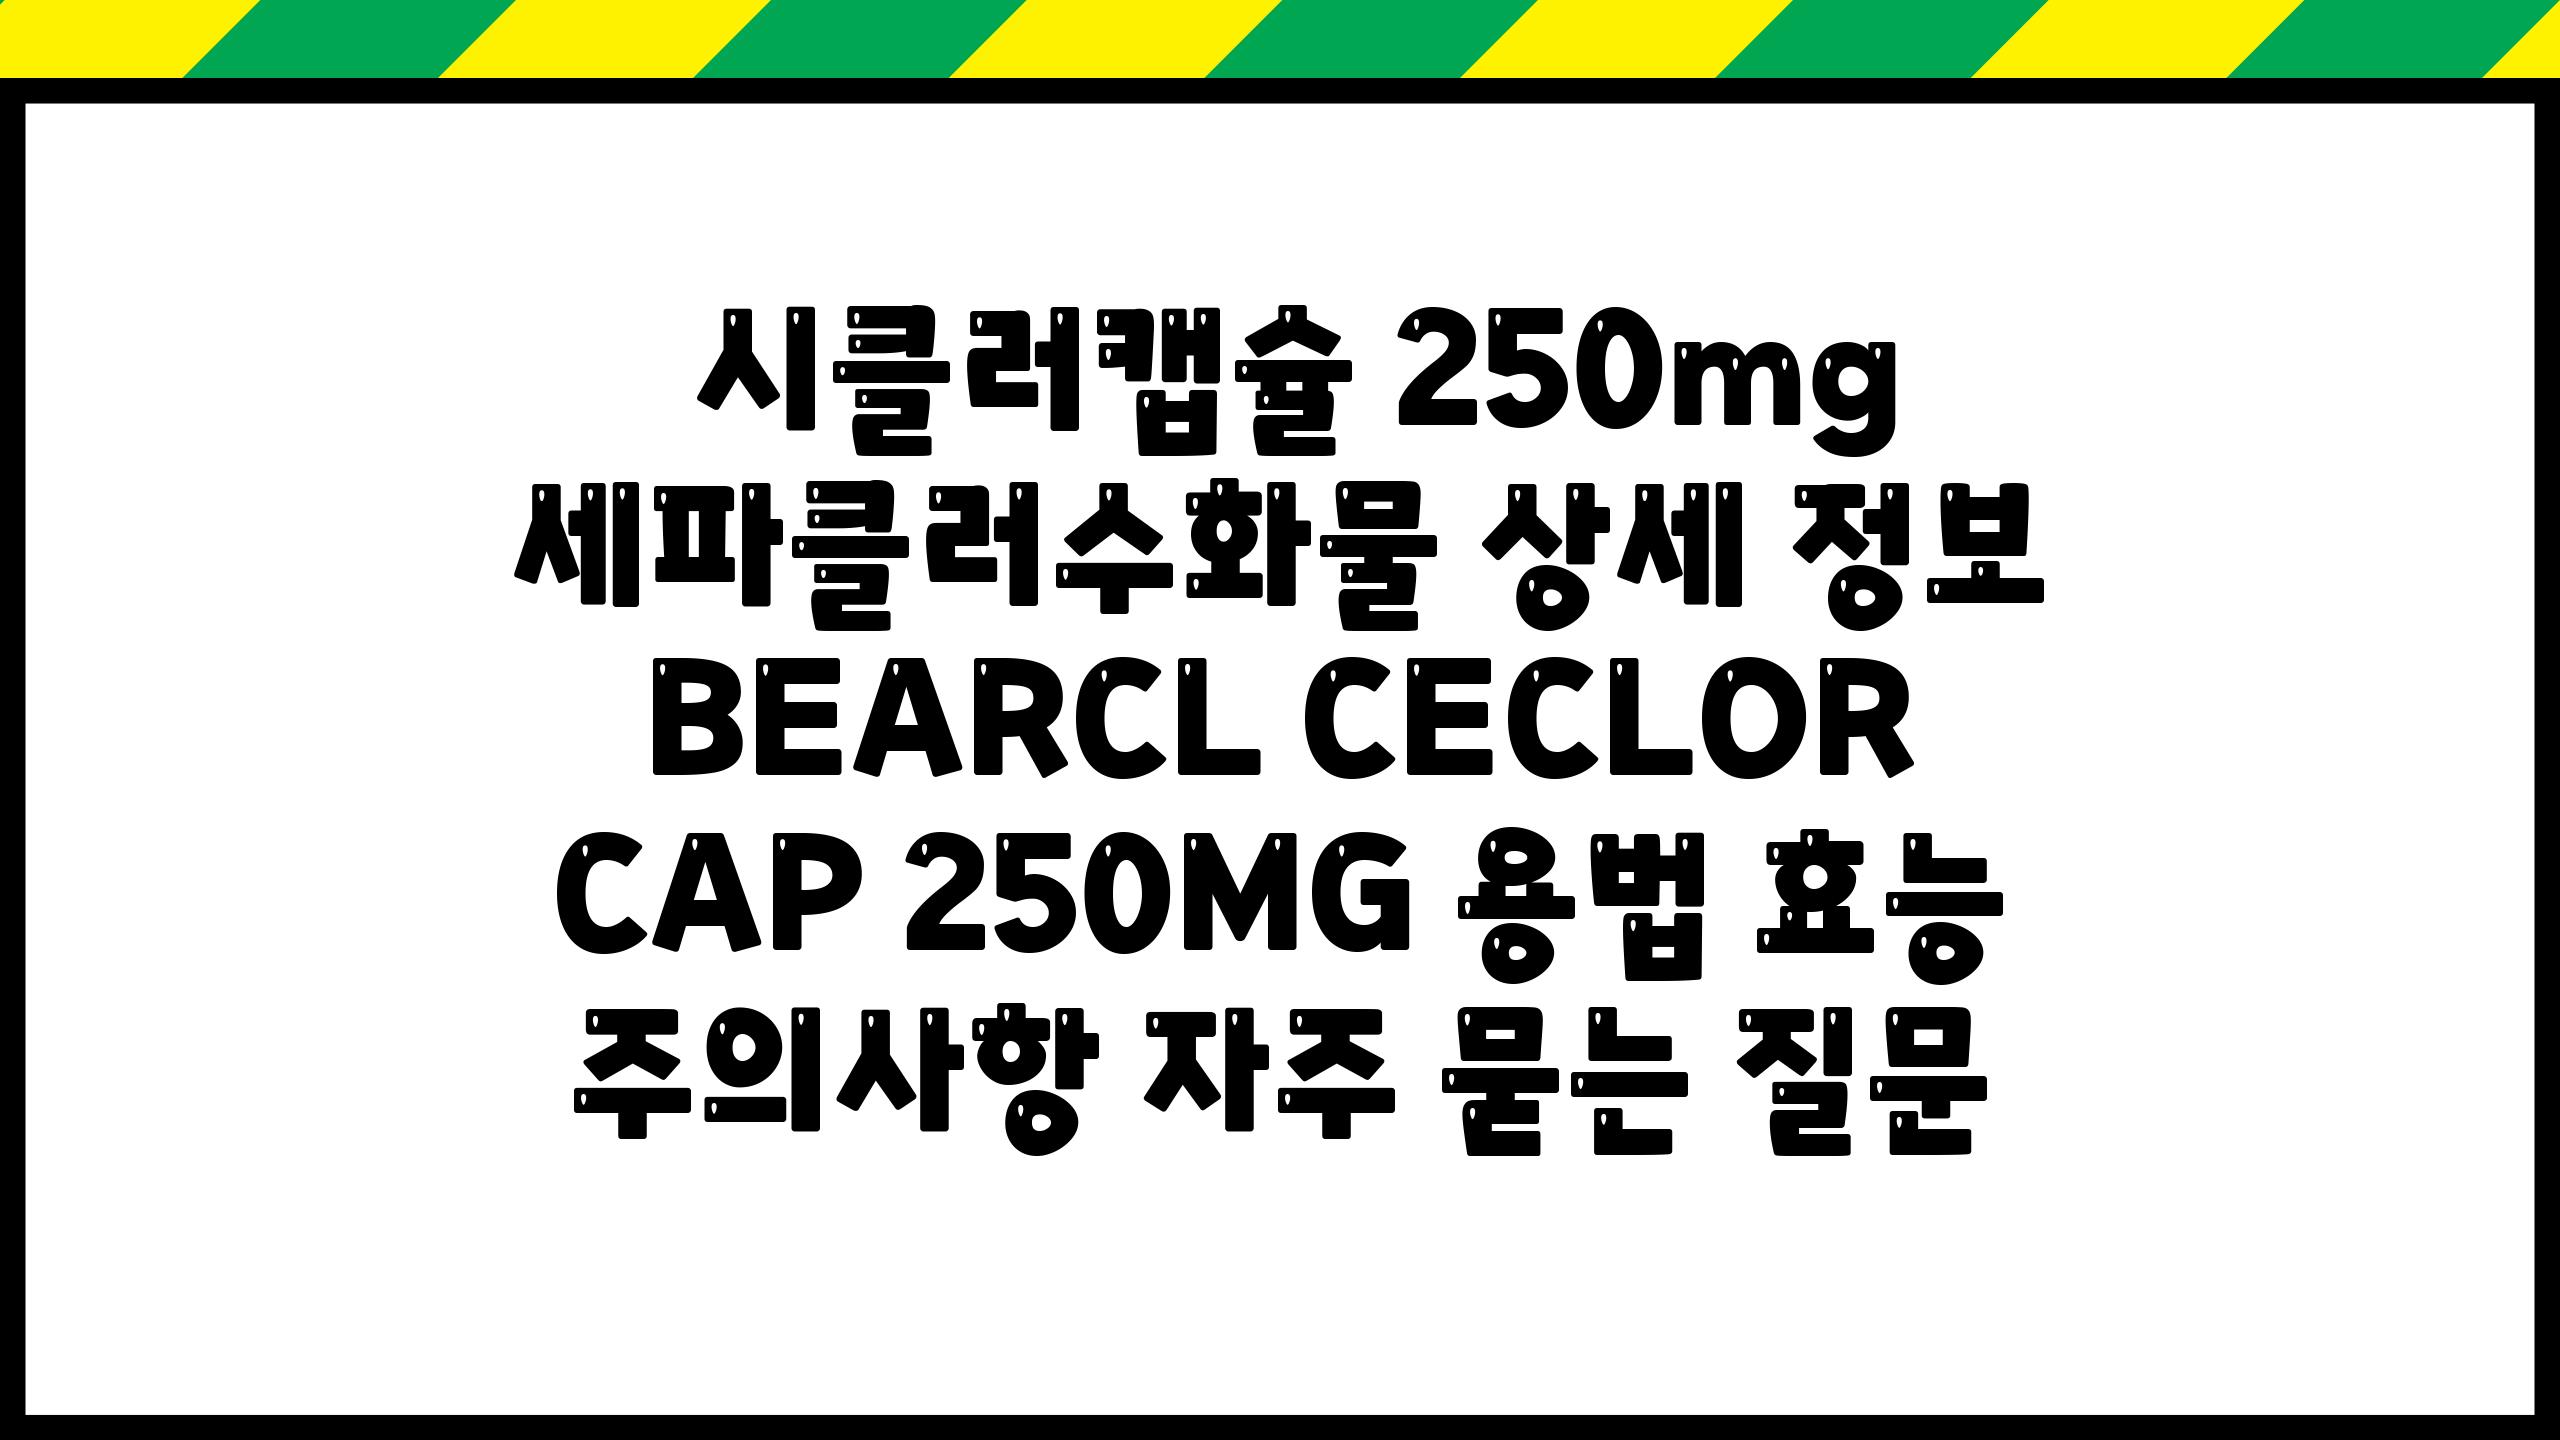  시클러캡슐 250mg 세파클러수화물 상세 정보  BEARCL CECLOR CAP 250MG 용법 효능 주의사항 자주 묻는 질문